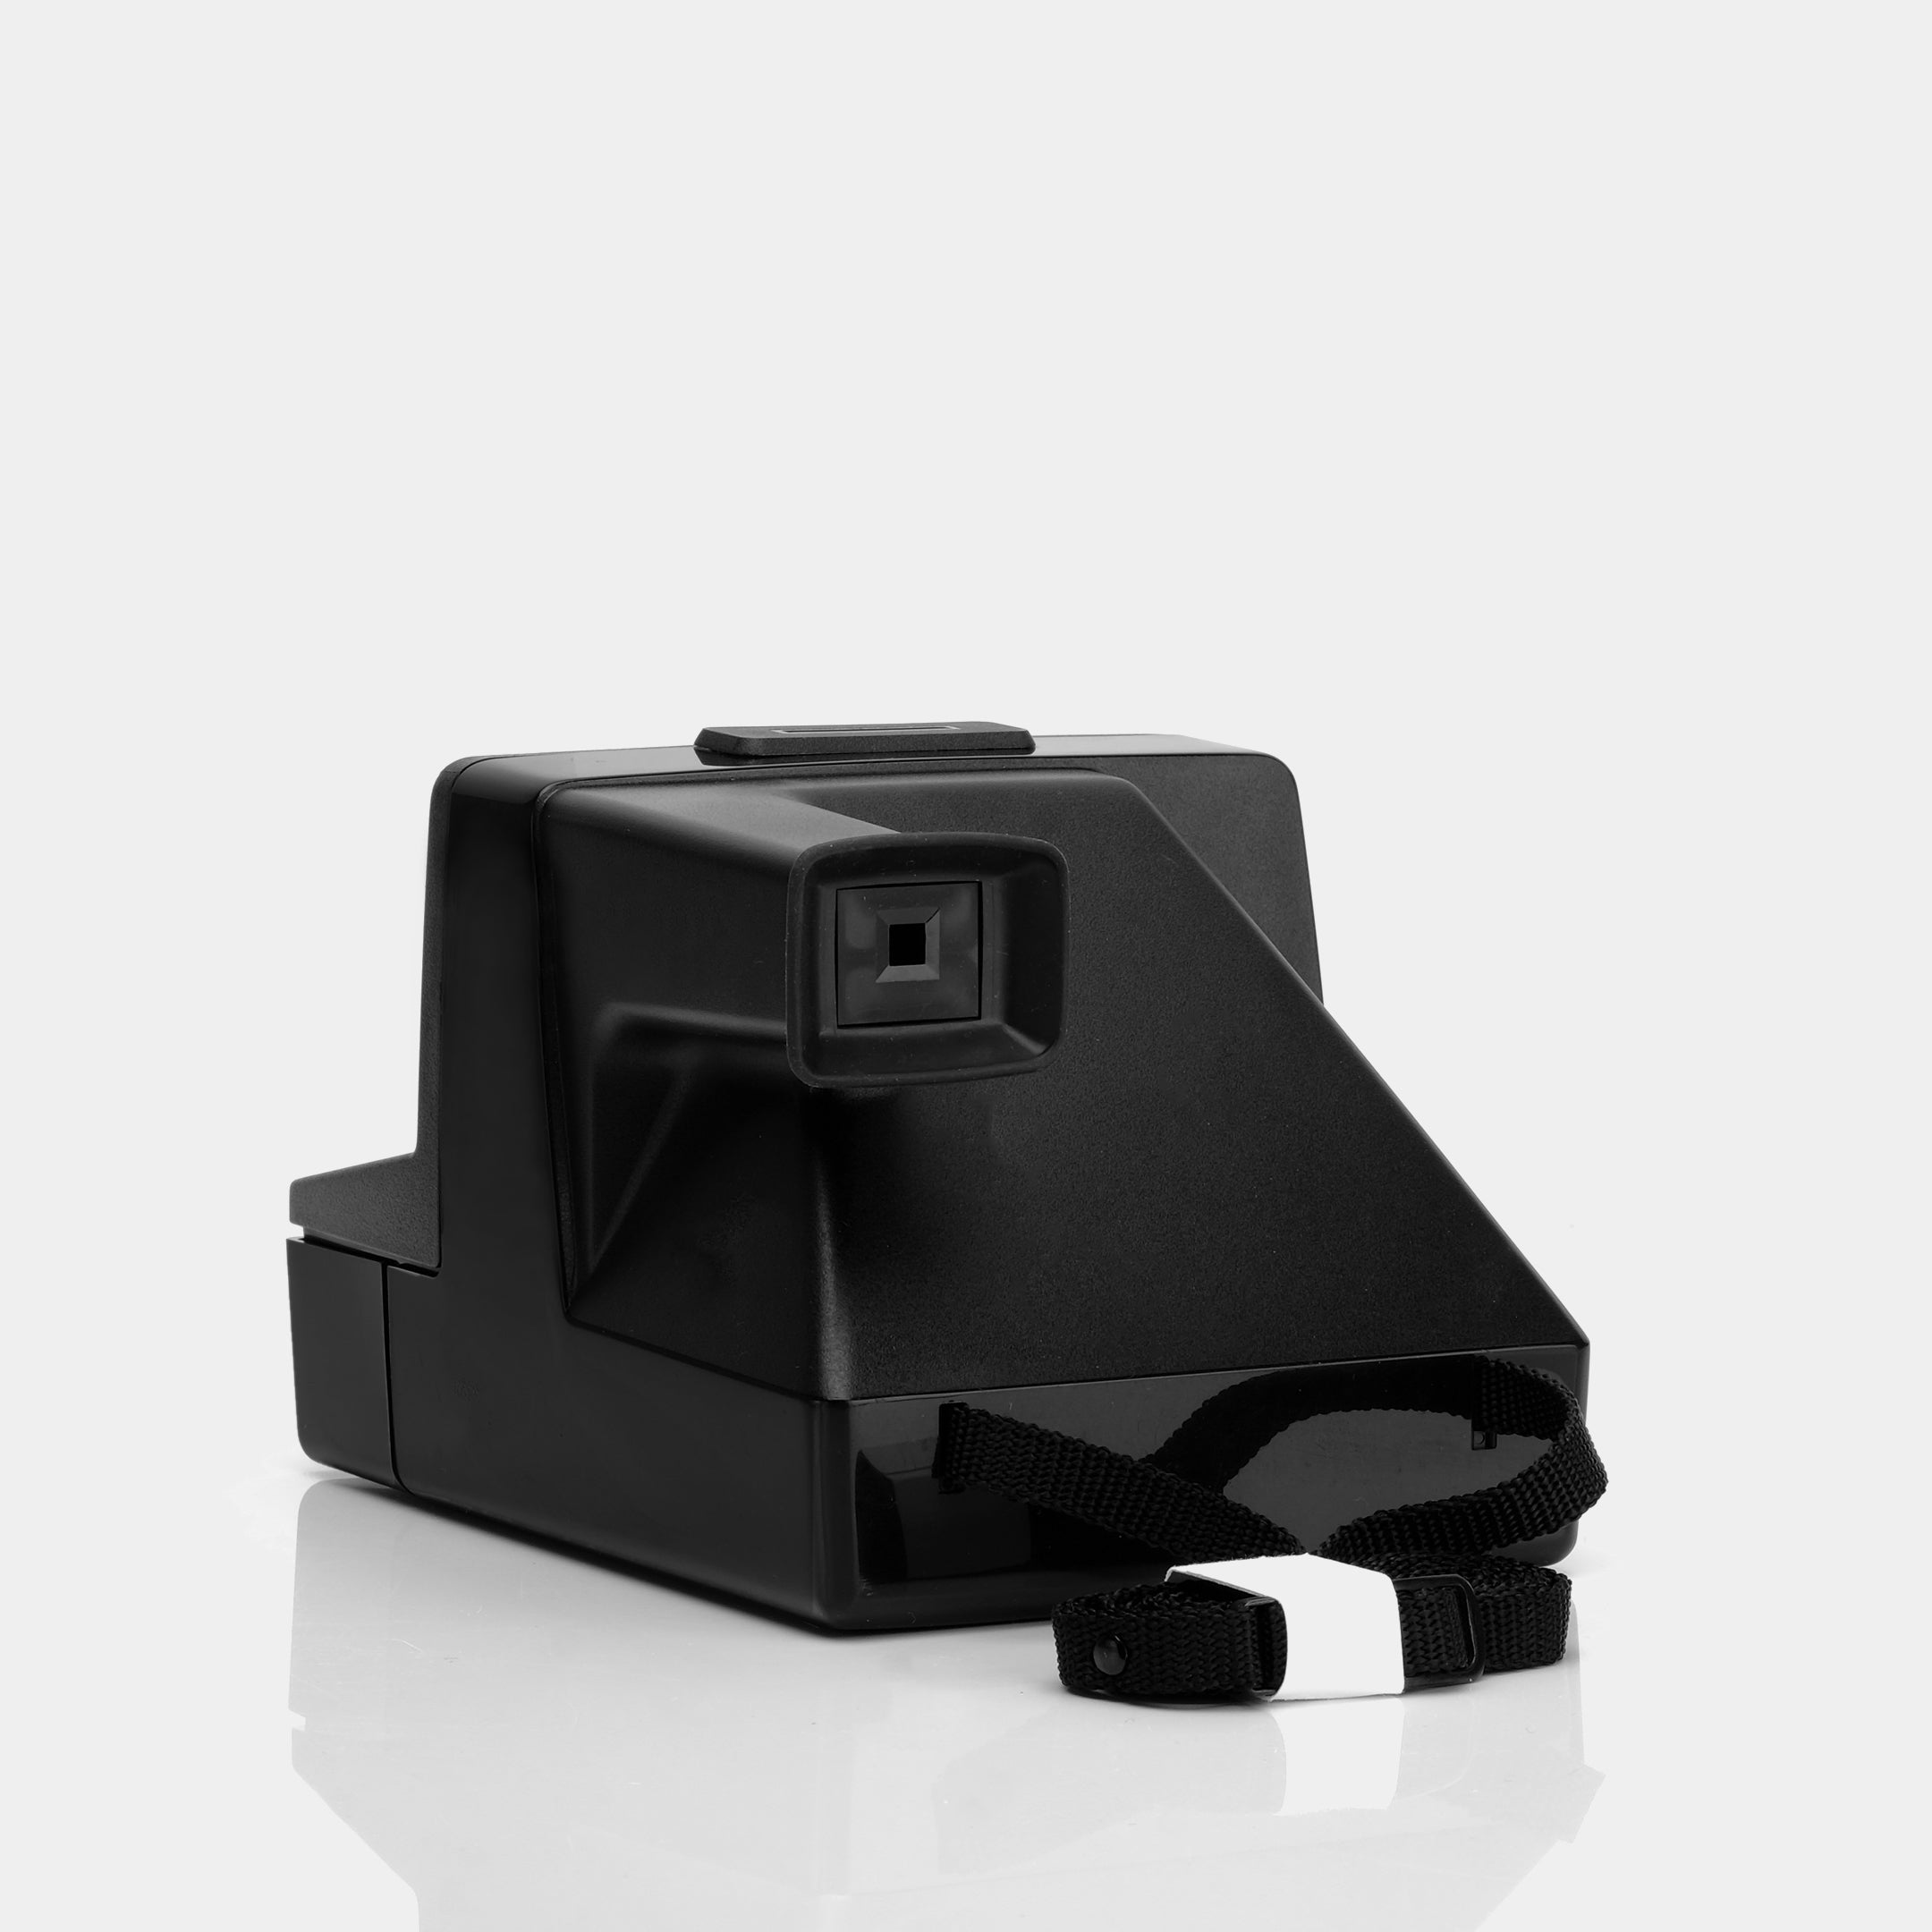 Polaroid SX-70 2000 Instant Film Camera